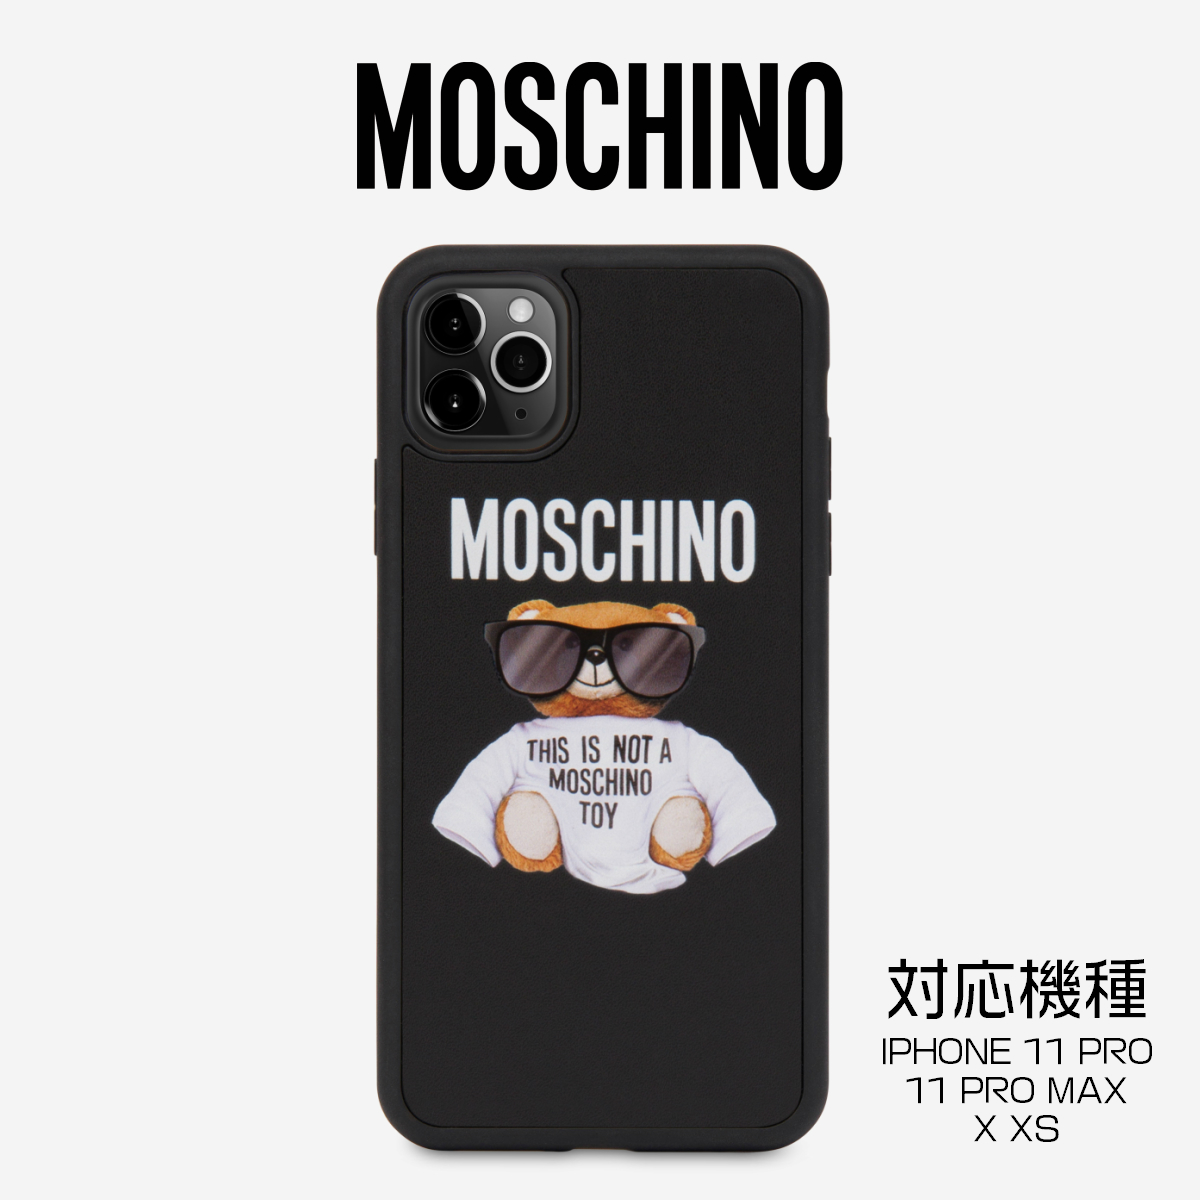 楽天市場 Moschino モスキーノ マイクロテディベア Cover Iphone 11 Pro 11 Pro Max X Xs Black ブラック Iphone ケース アイフォン スマホケース メンズ レディース ハイブランド スマホケース S S Shop